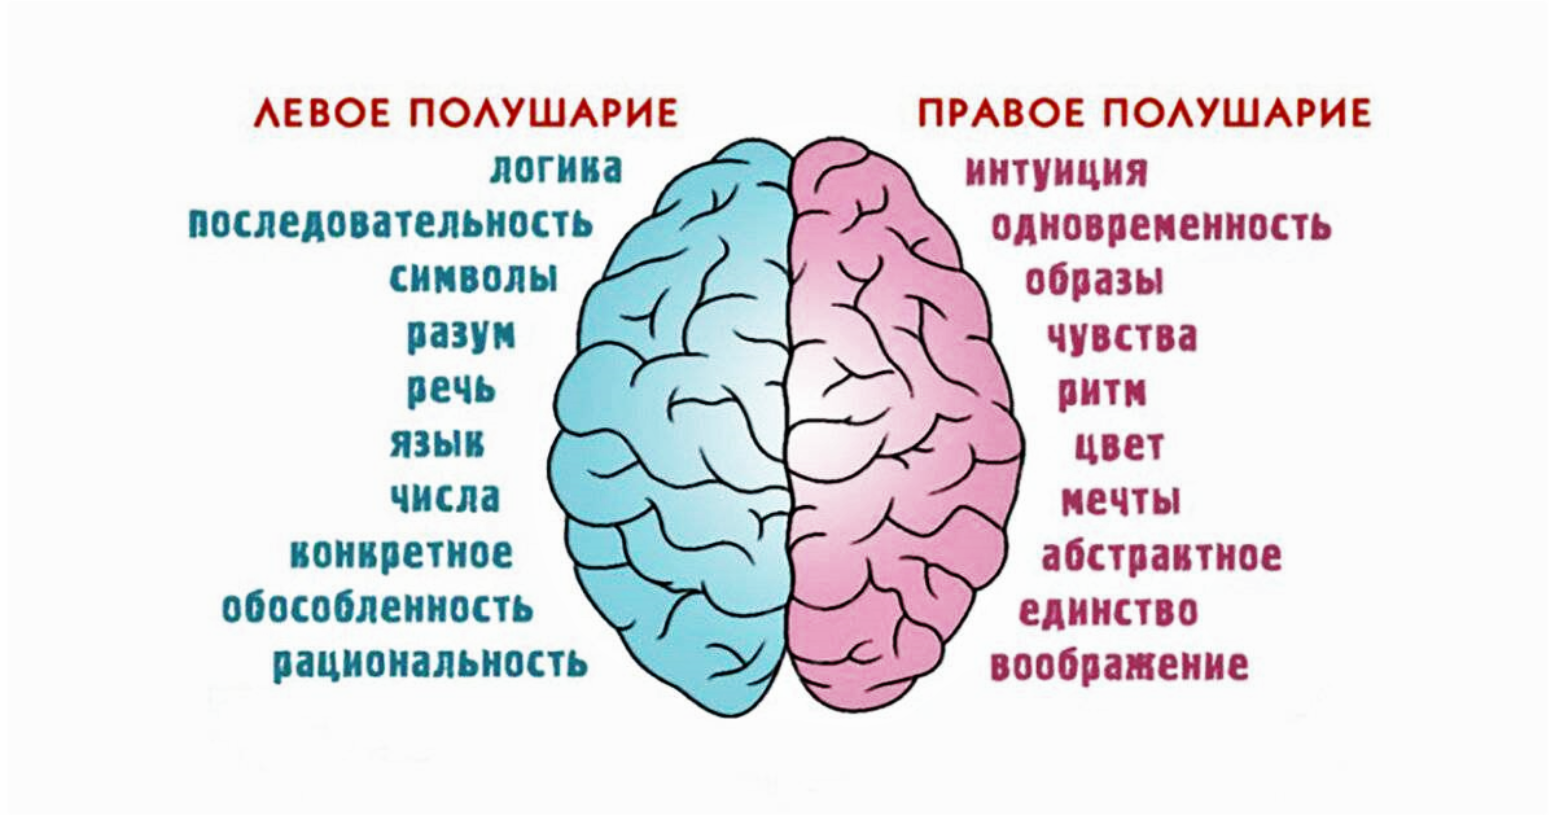 Развитие правого и левого полушарий. Полушария мозга девое т правое. За что отвечает правое полушарие. За что отвечают полушария головного мозга человека левое и правое. За какие процессы головного мозга отвечает правое полушарие.